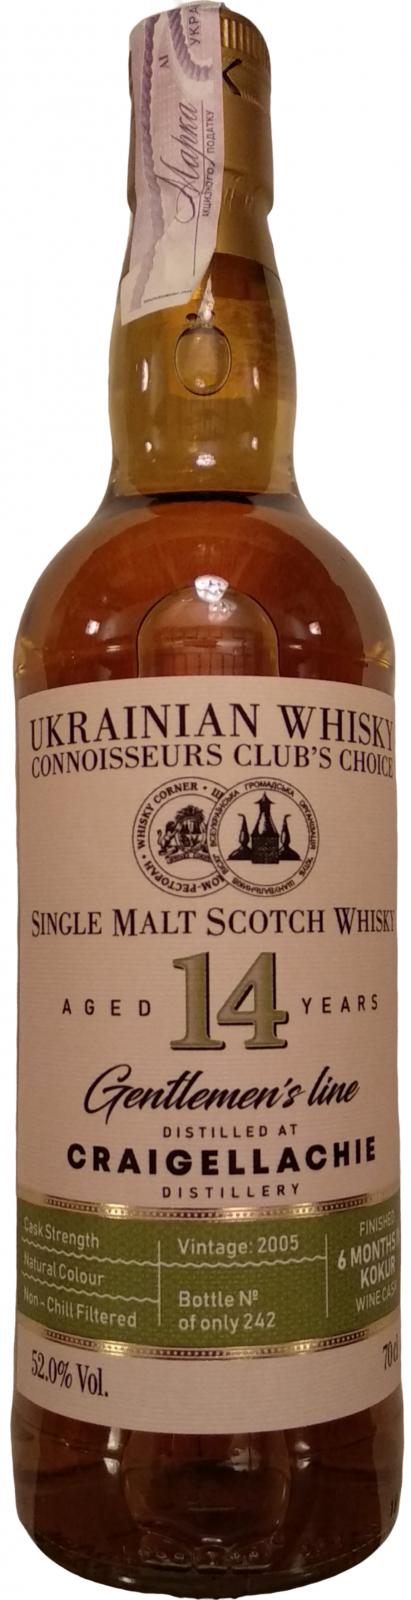 Craigellachie 2005 UD Ukrainian Whisky Connoisseurs Club's Choice 52% 700ml